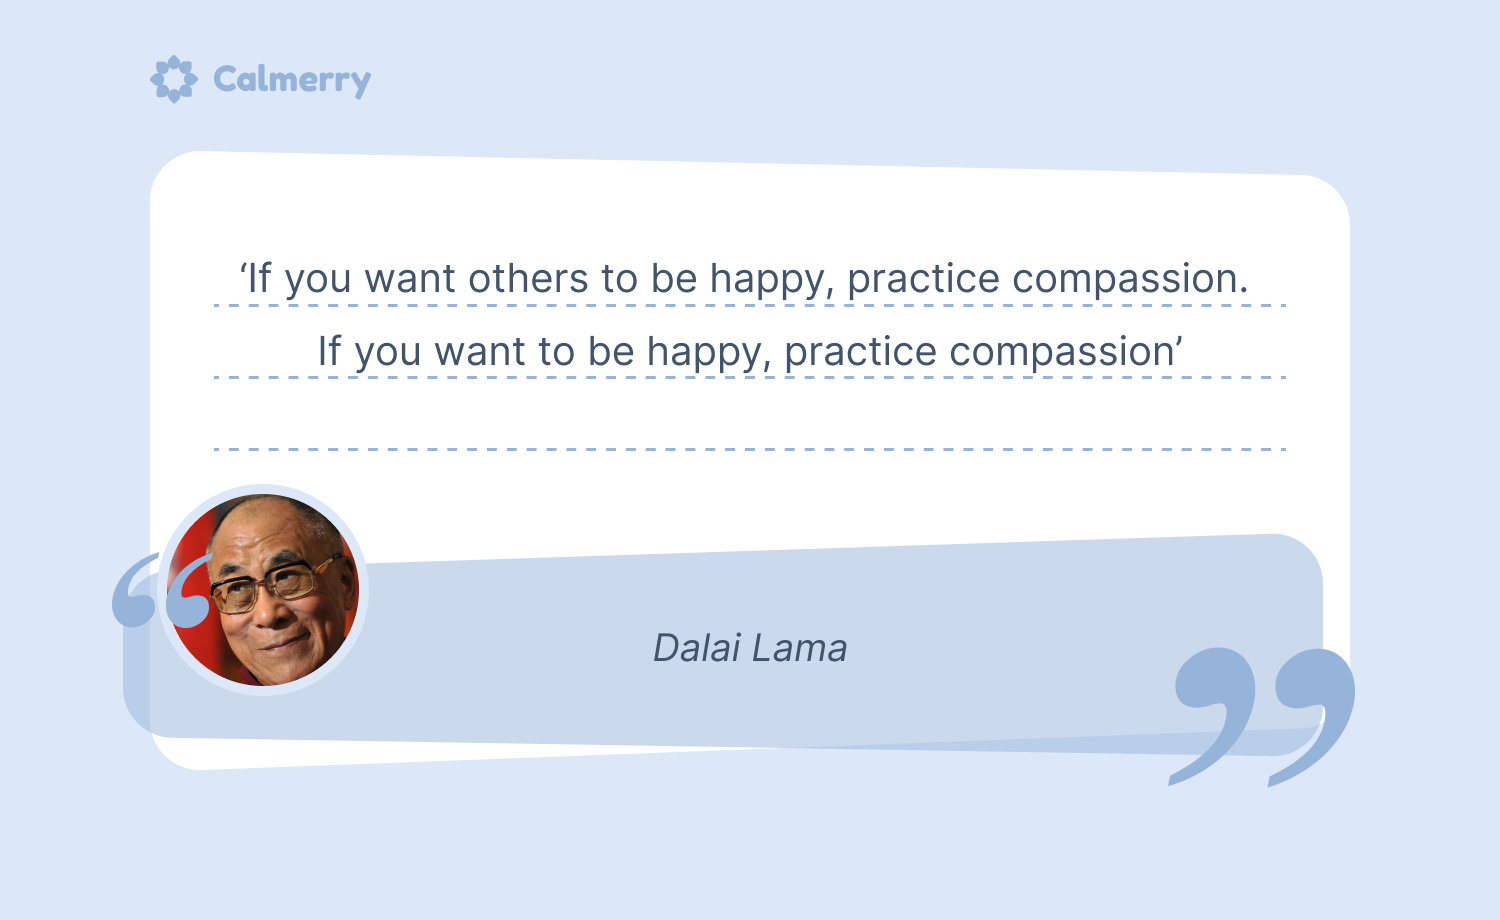 Compassion is the key. Dalai Lama